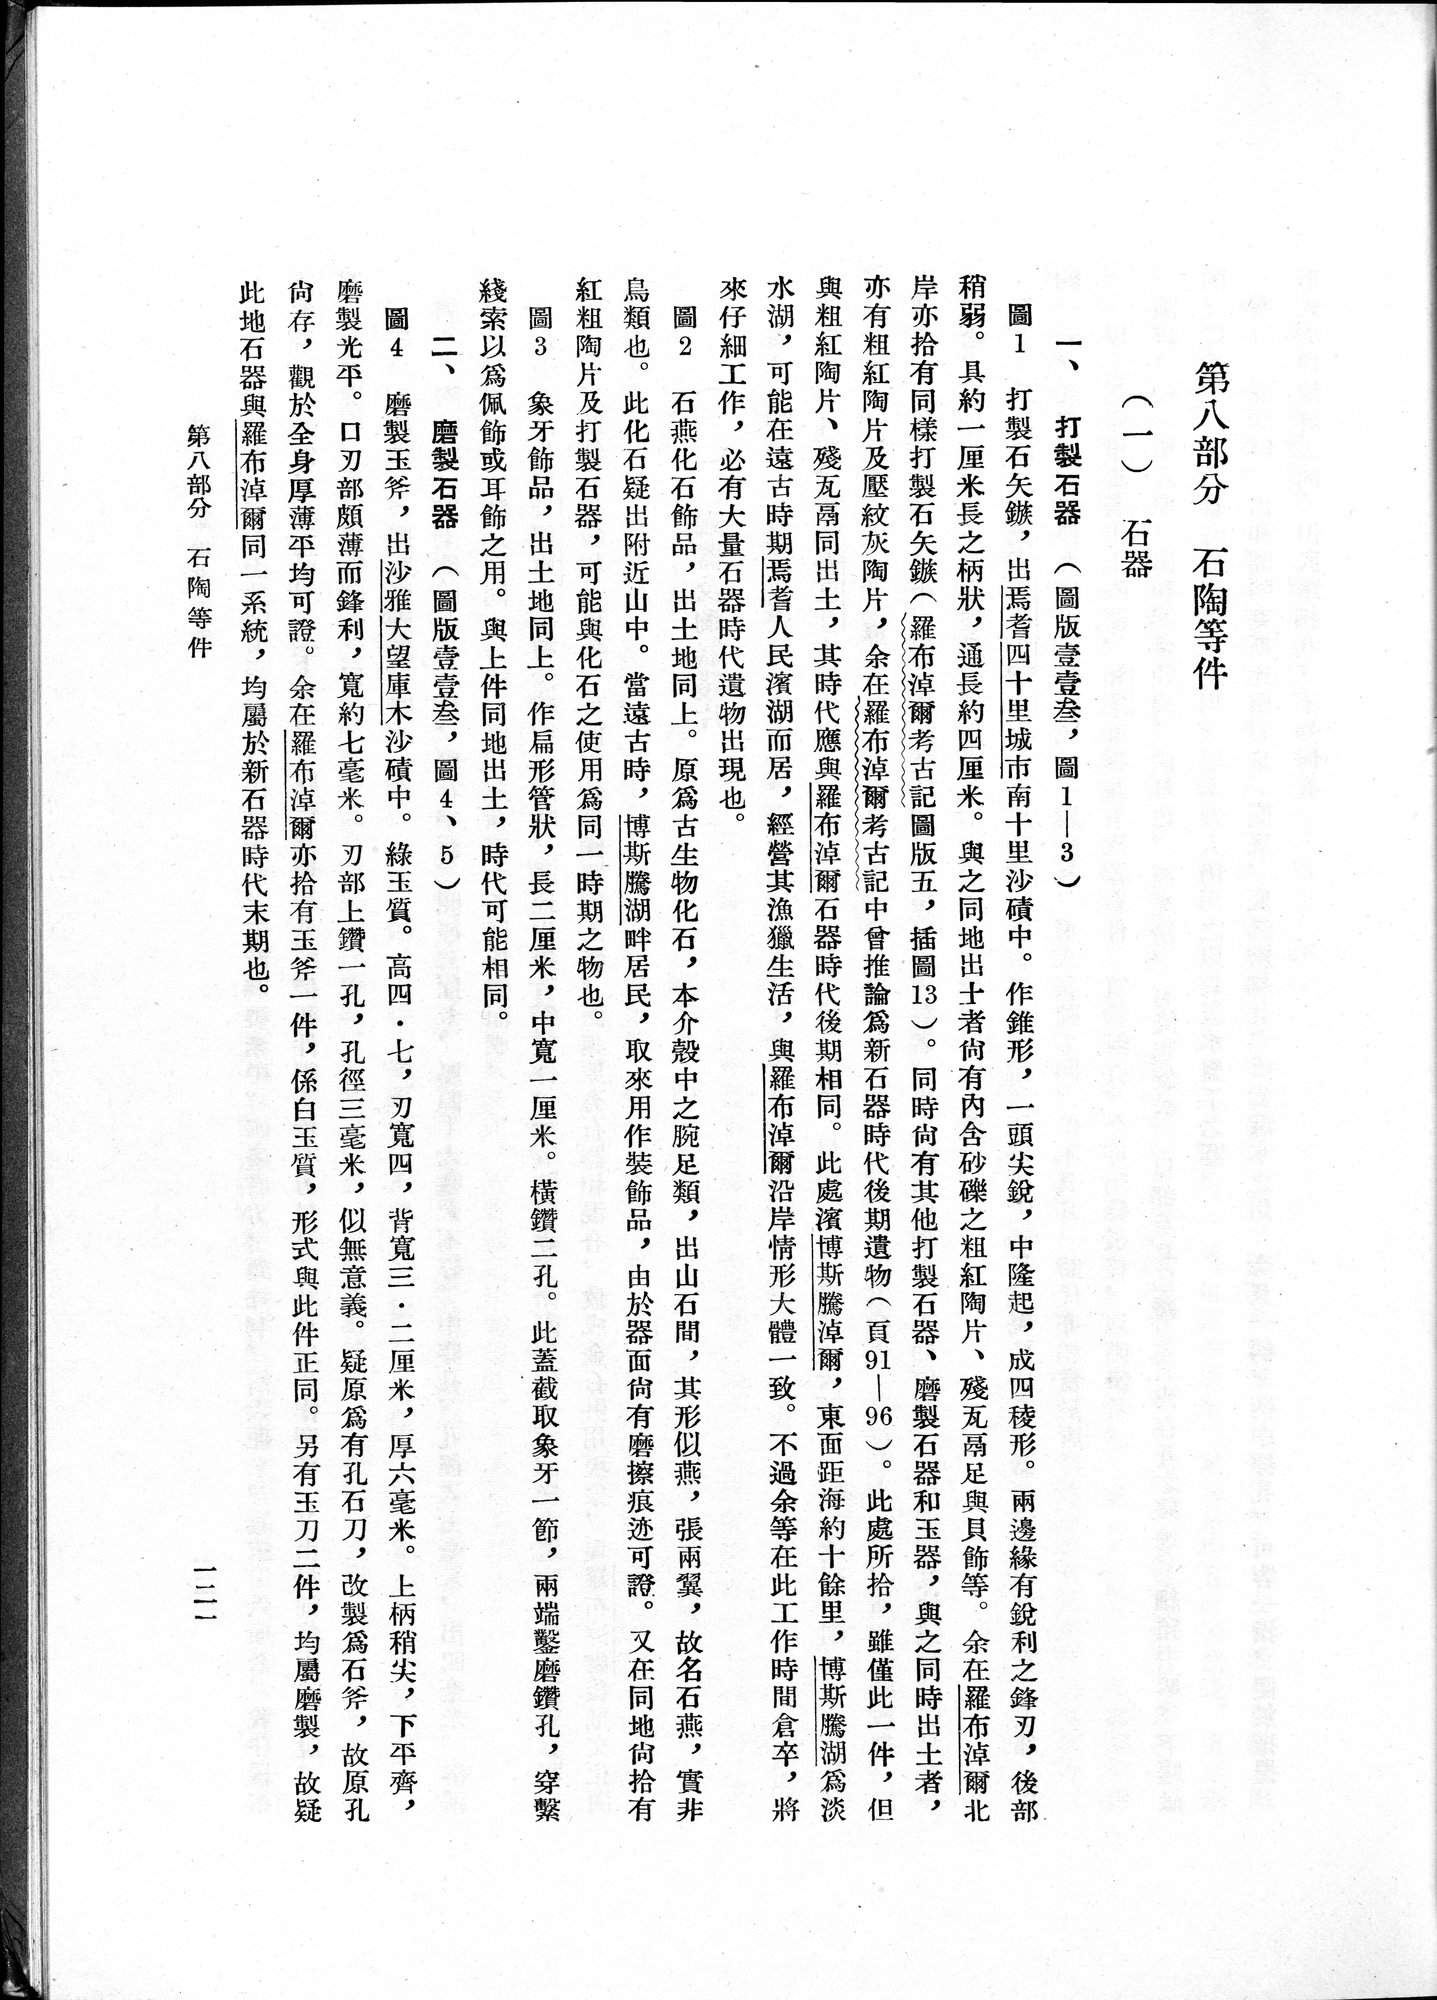 塔里木盆地考古記 : vol.1 / Page 185 (Grayscale High Resolution Image)